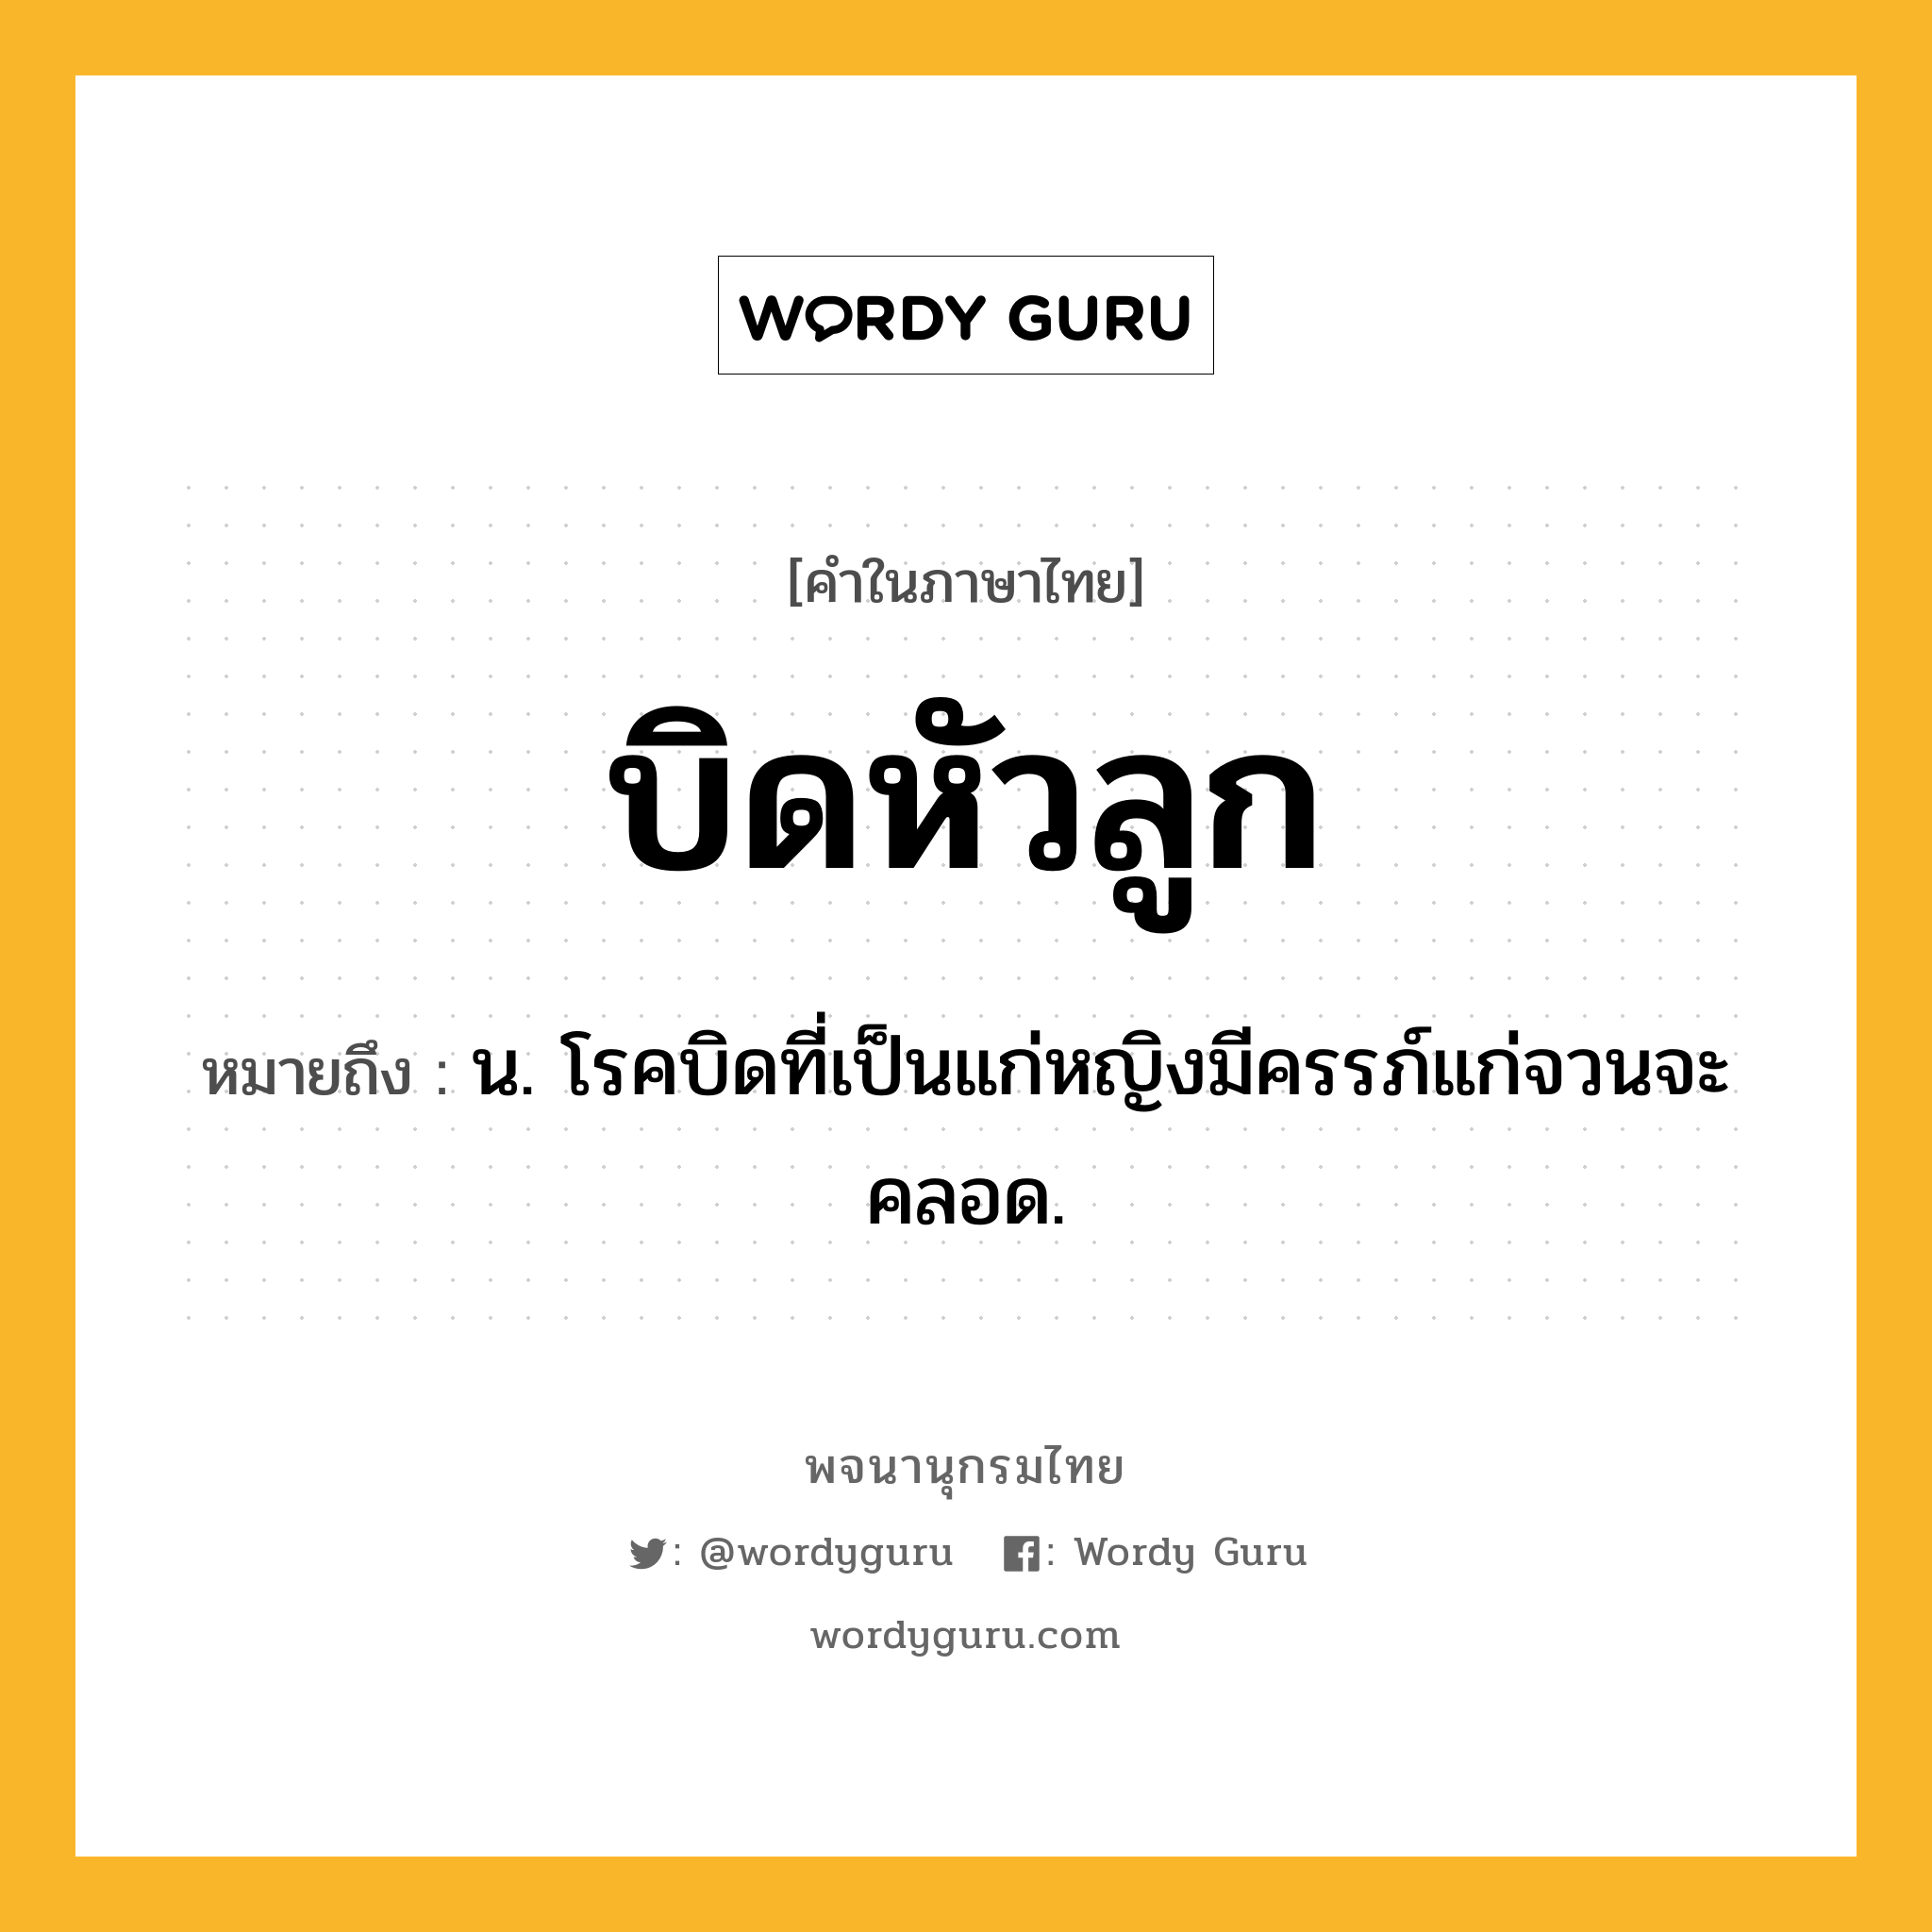 บิดหัวลูก ความหมาย หมายถึงอะไร?, คำในภาษาไทย บิดหัวลูก หมายถึง น. โรคบิดที่เป็นแก่หญิงมีครรภ์แก่จวนจะคลอด.